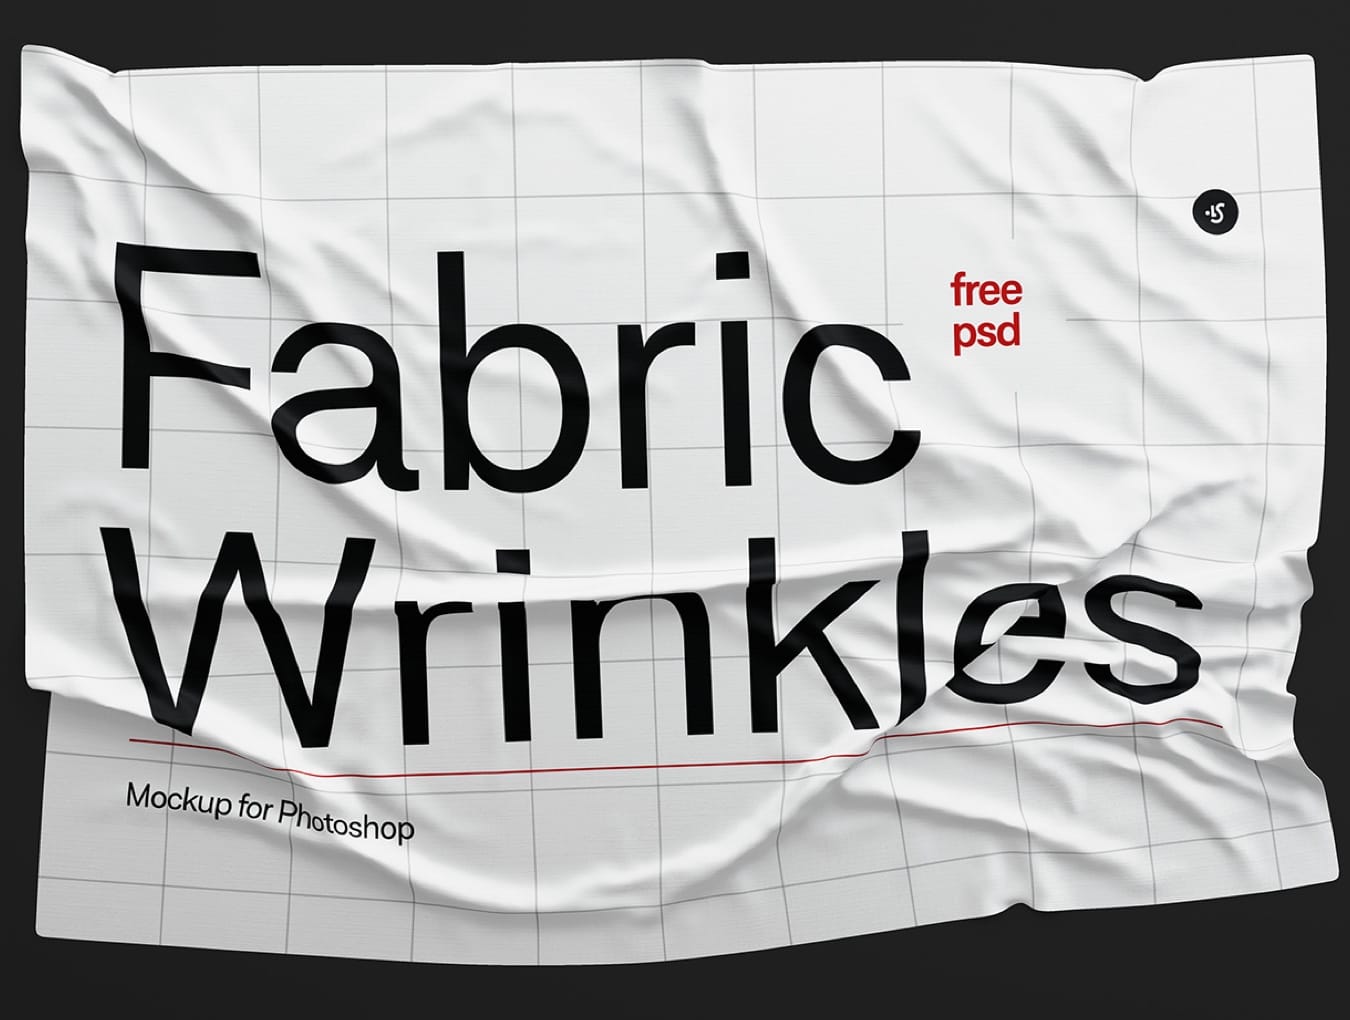 Fabric Wrinkles Mockup